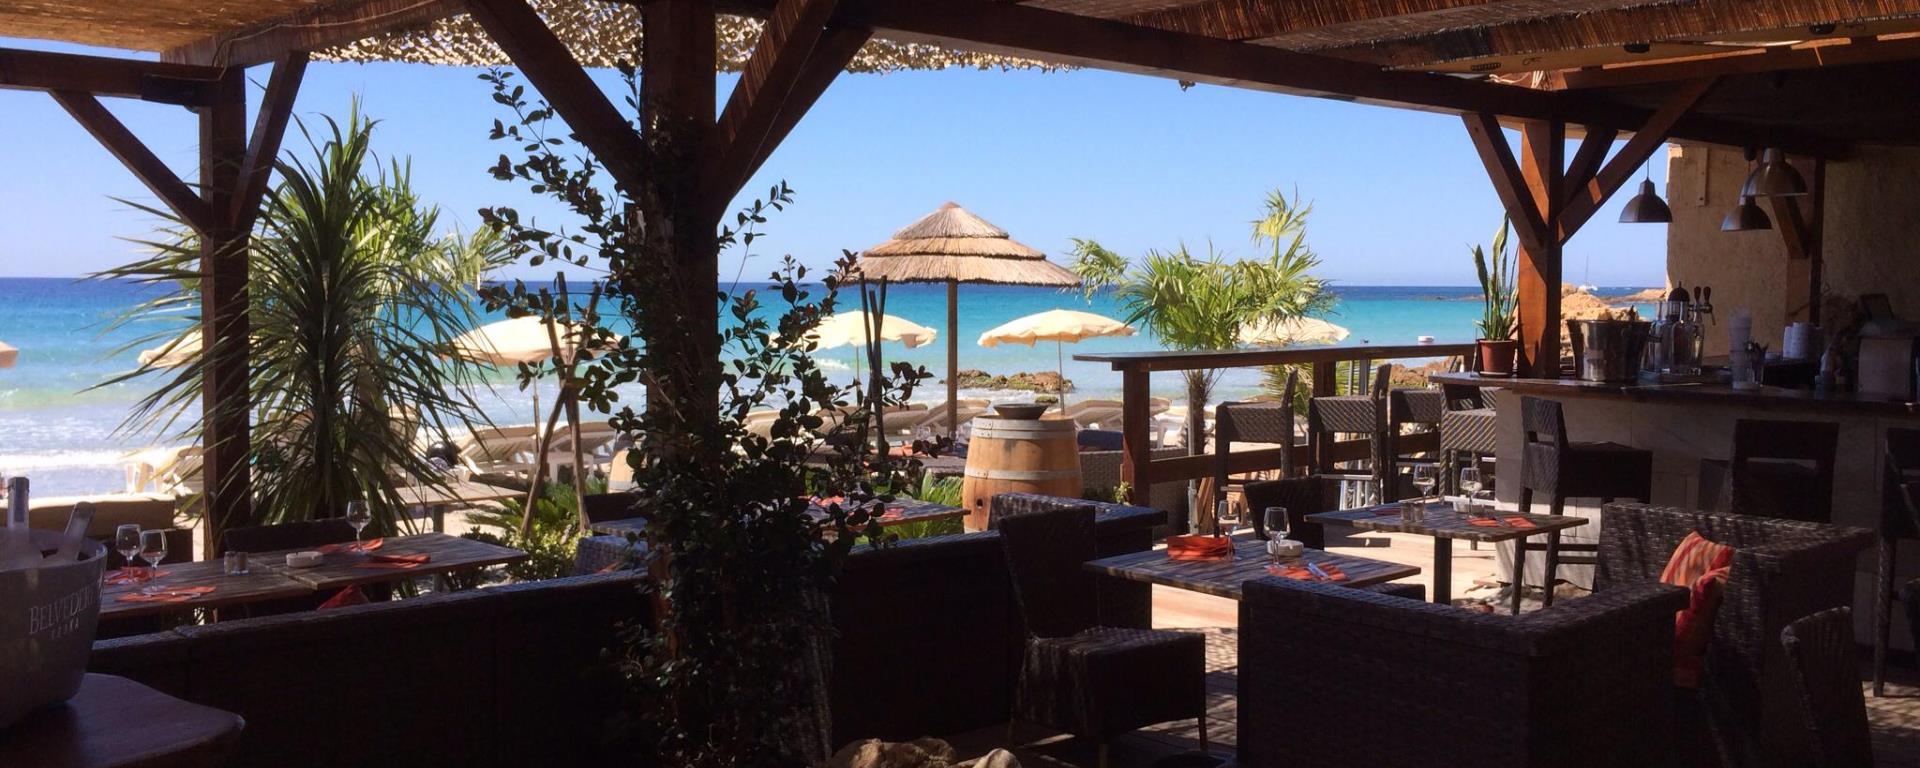 2019-restaurant-cote-plage-terrasse coteplage